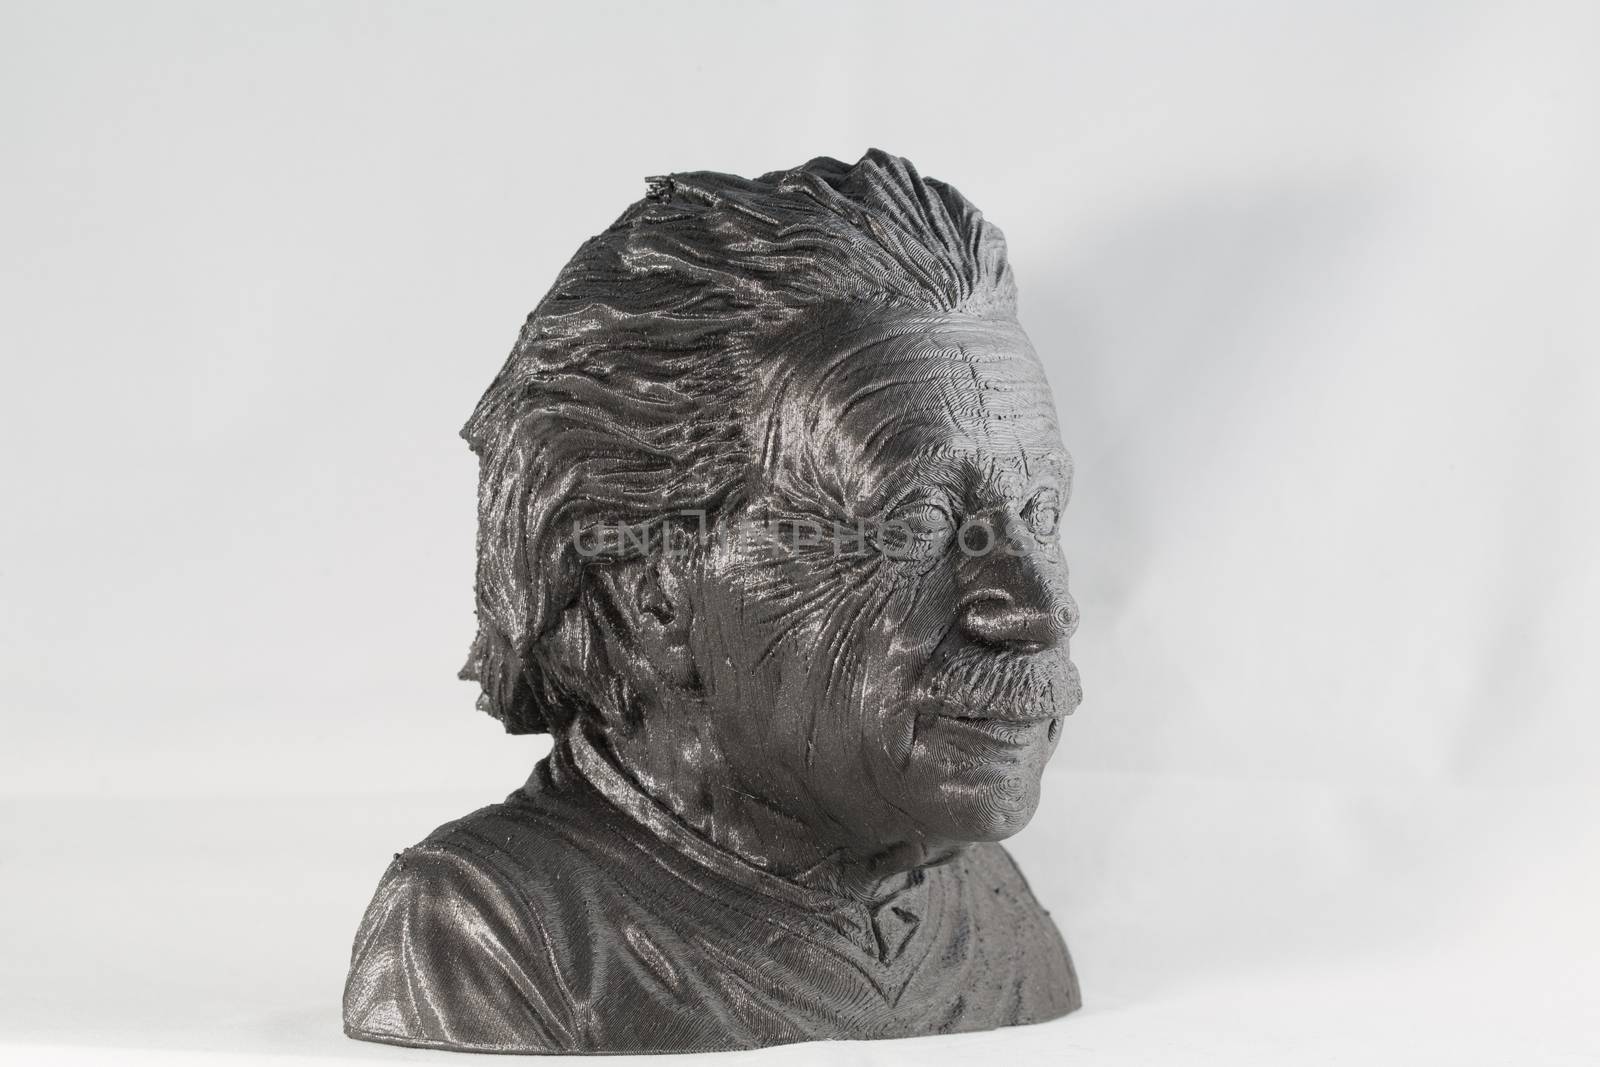 3D printed Alber Einstein Bust metallic